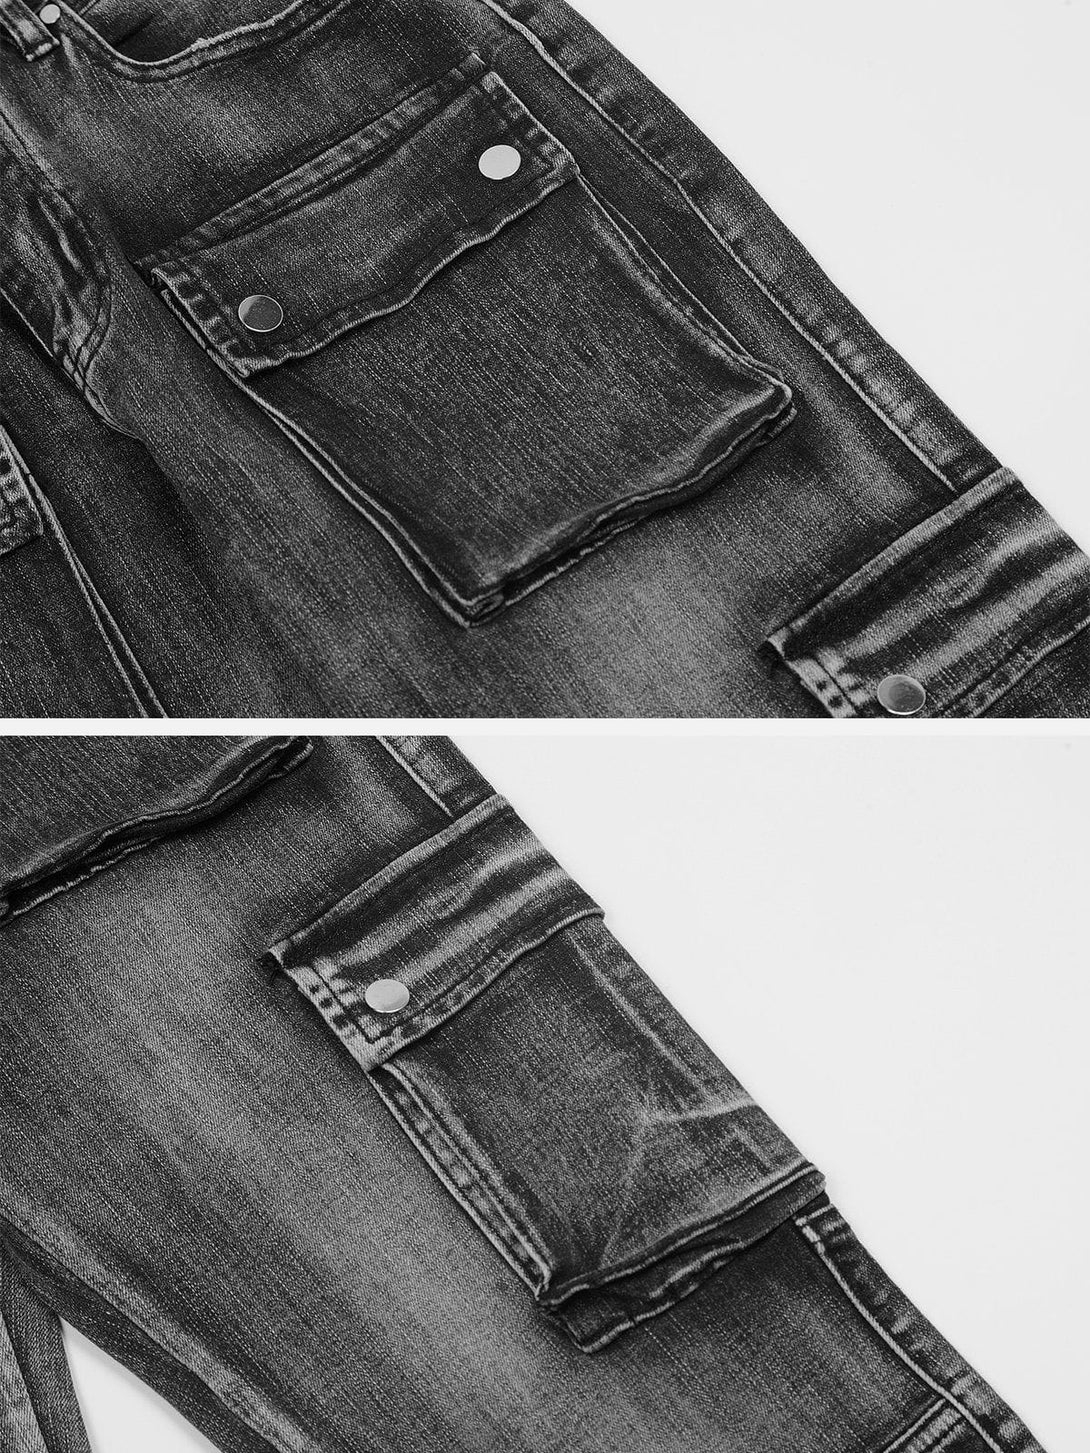 Levefly - Vintage Wash Multi Pocket Jeans - Streetwear Fashion - levefly.com